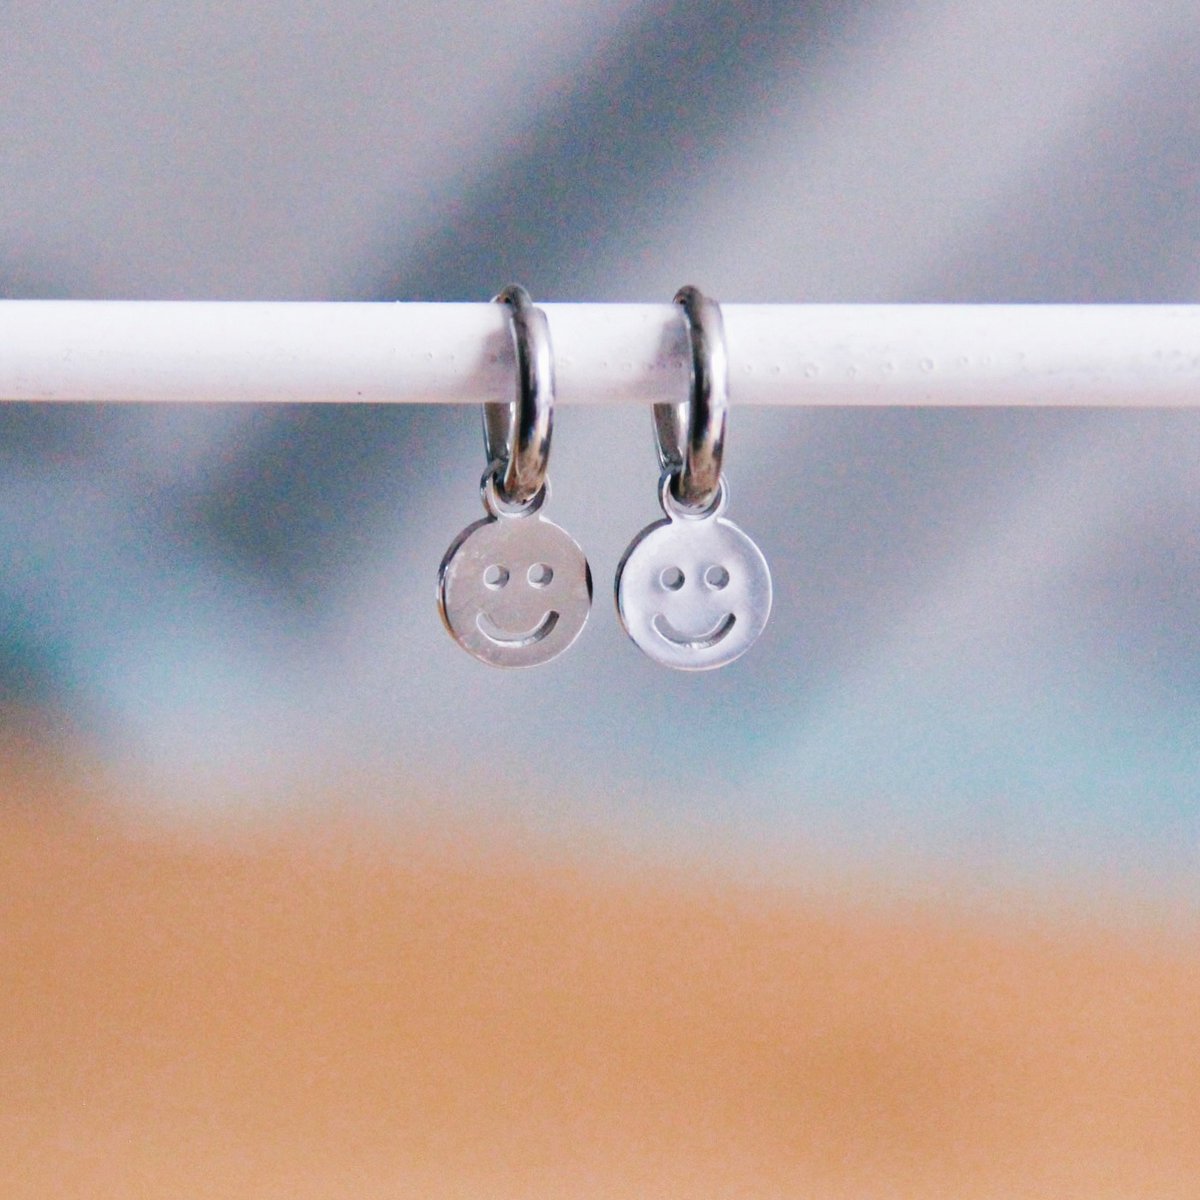 Stainless steel hoop earrings with smiley – silver